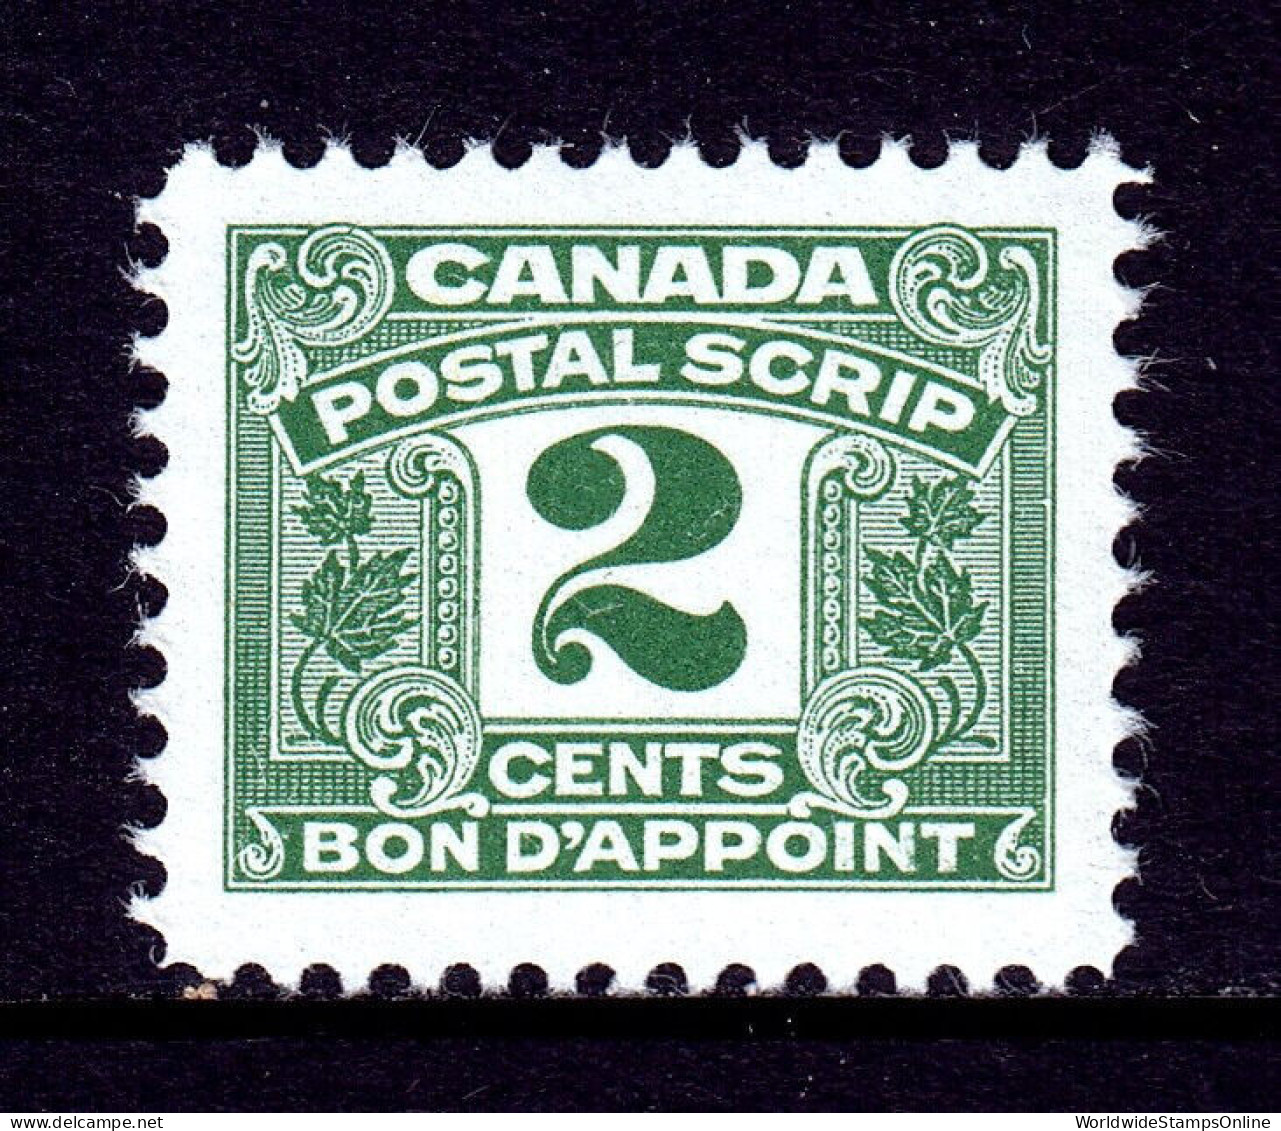 CANADA — VAN DAM FPS42 — 2¢ THIRD ISSUE POSTAL SCRIPT — MNH — CV $31 - Steuermarken